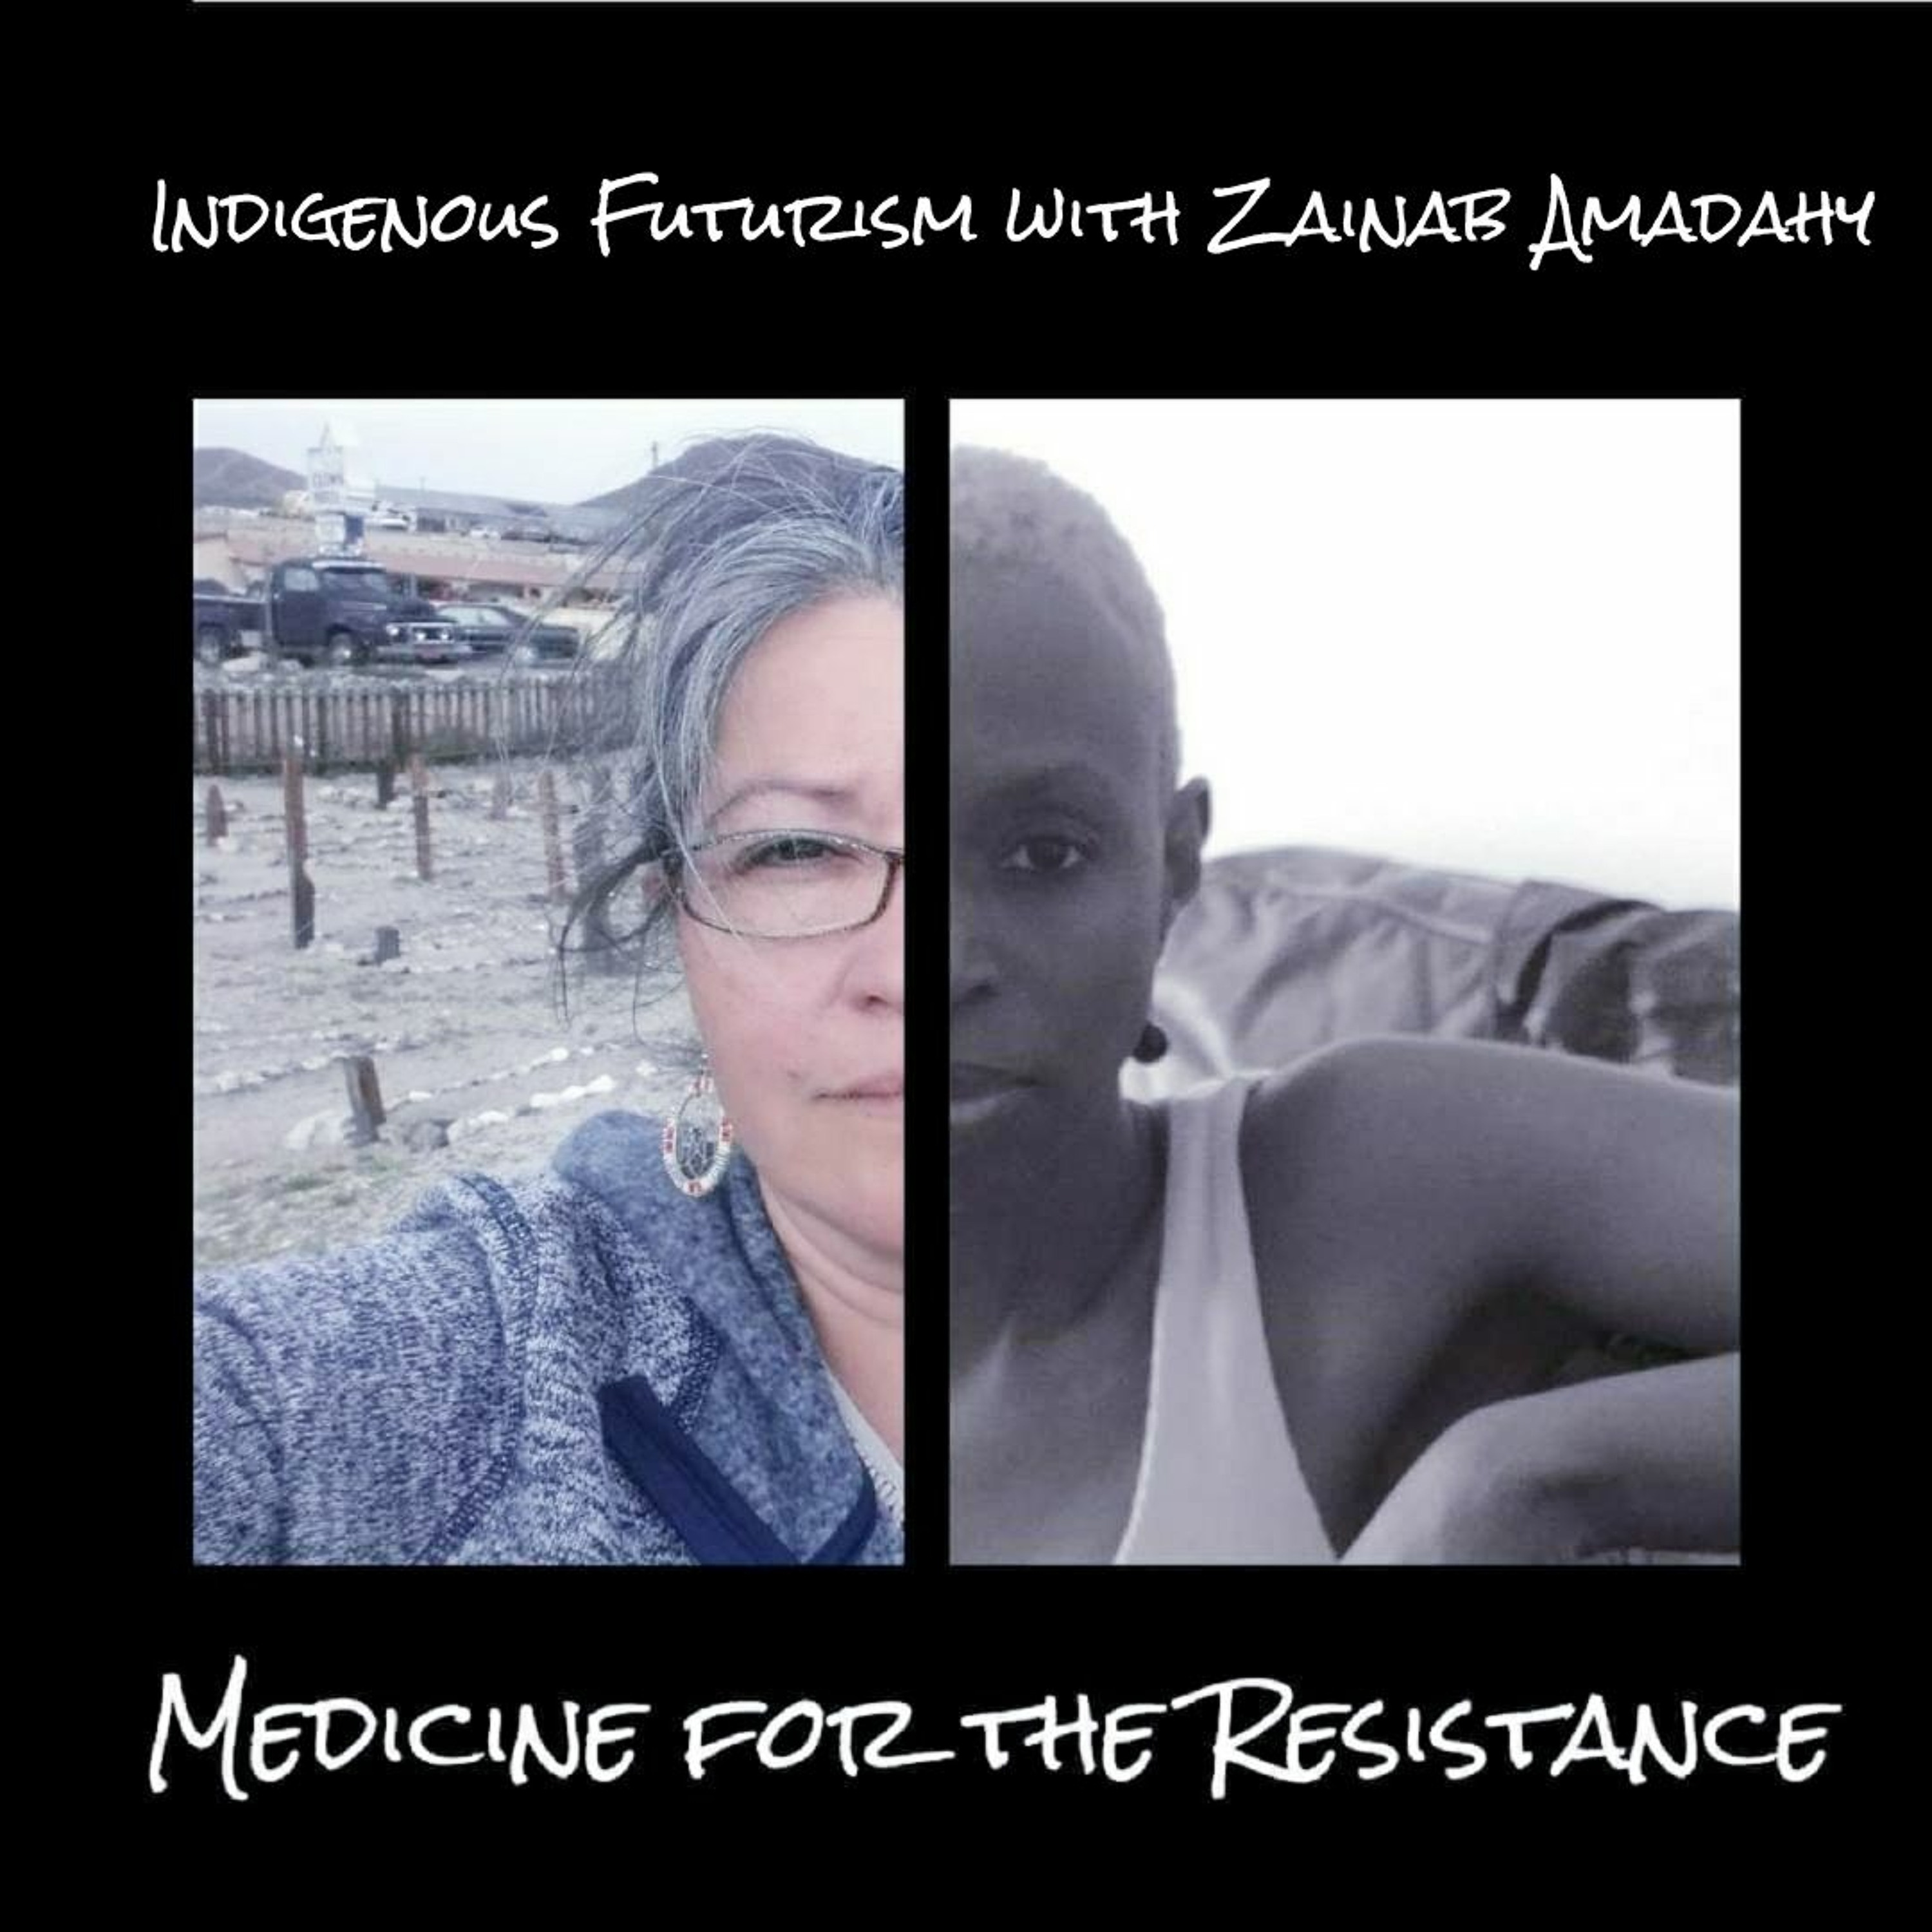 Indigenous futurism with Zainab Amadahy